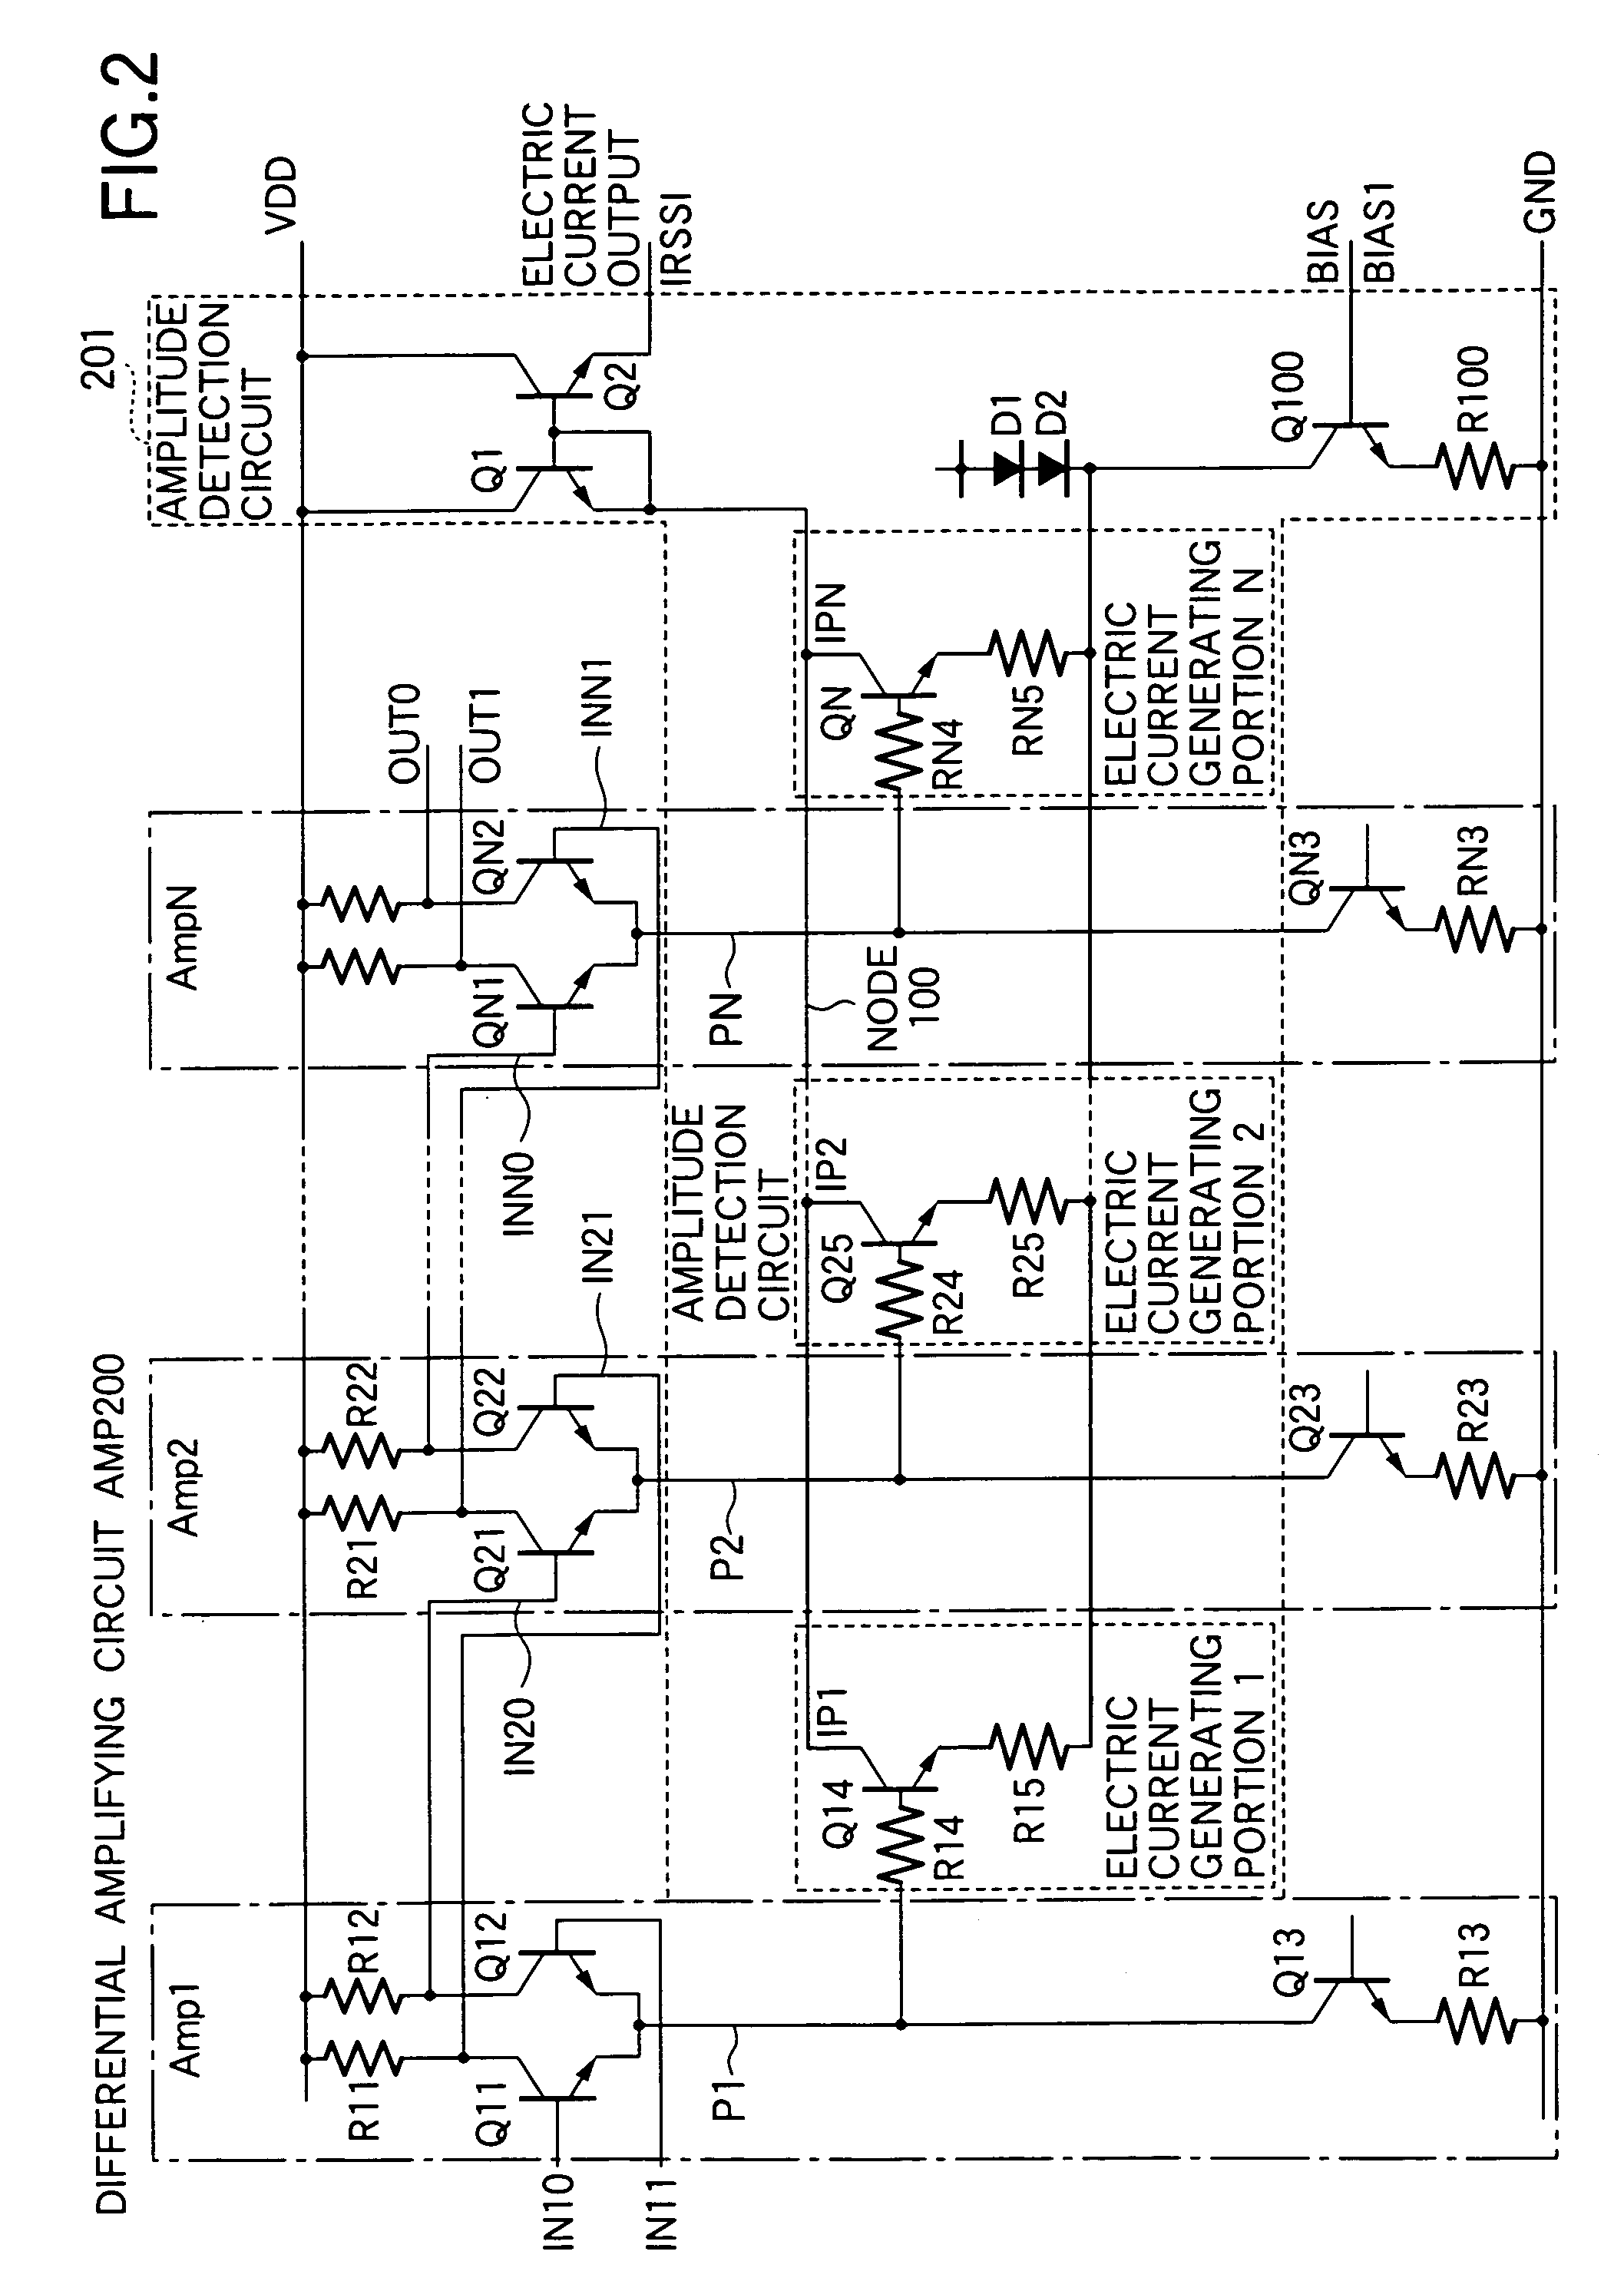 Signal waveform detection circuit